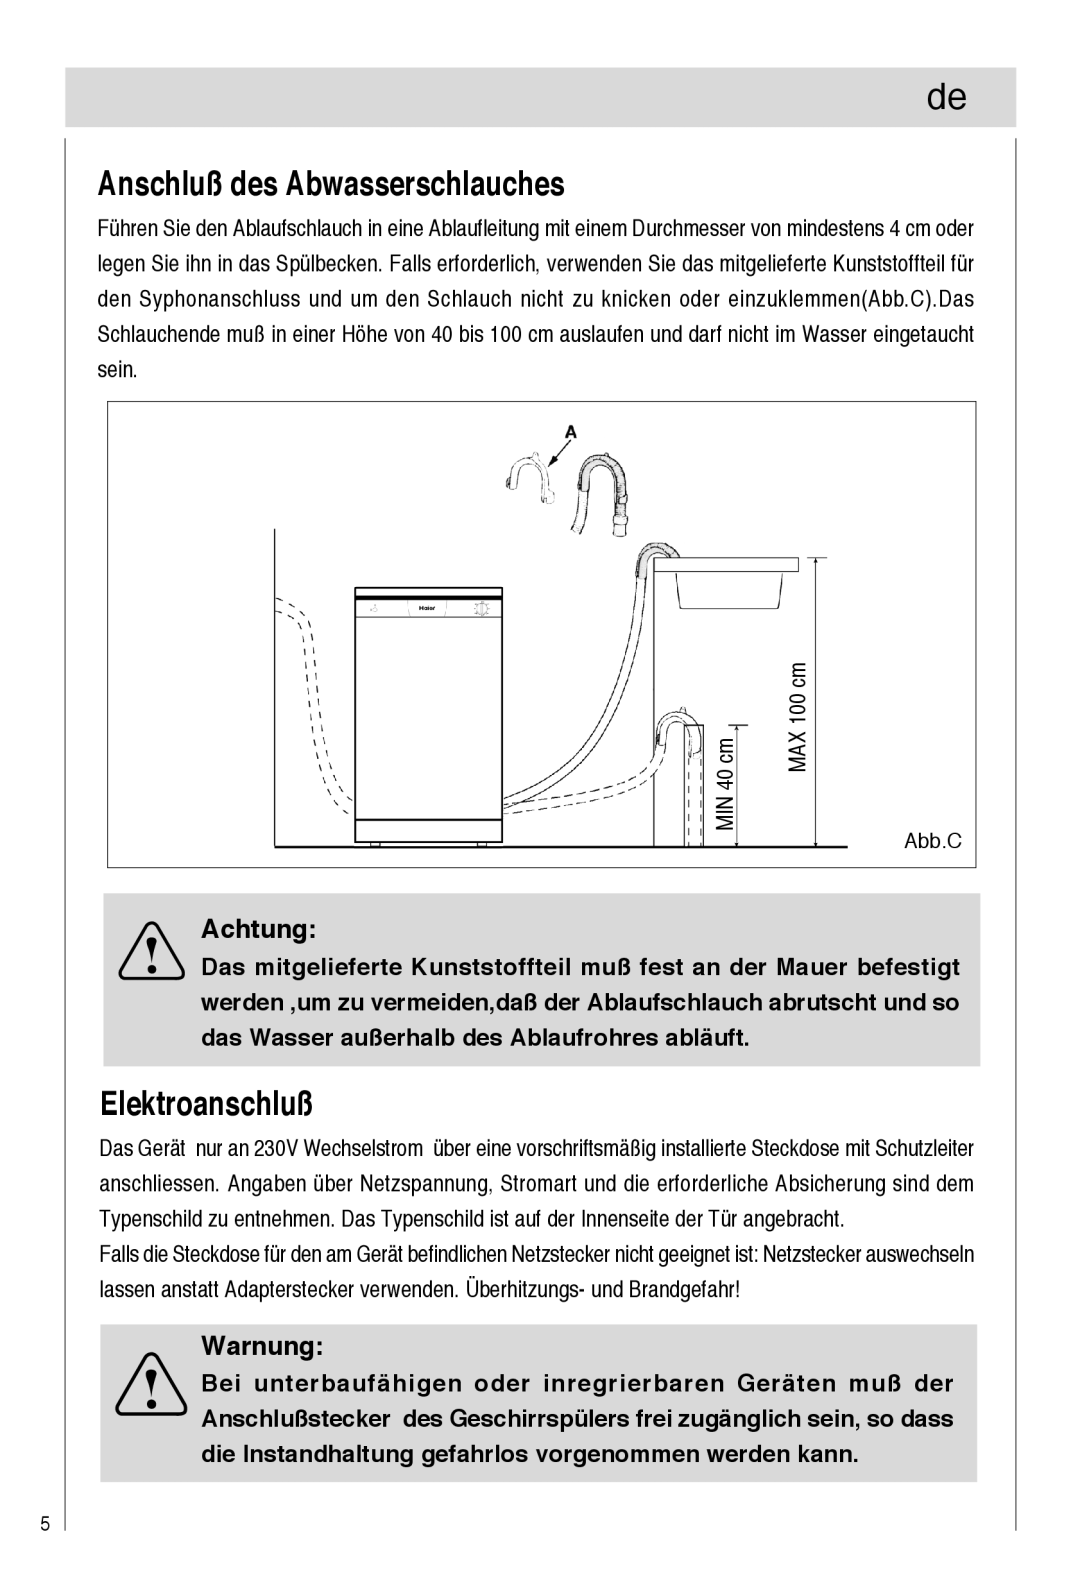 Haier DW9-TFE1 operation manual Anschluß des Abwasserschlauches, Elektroanschluß, Achtung, Warnung, Abb.C 